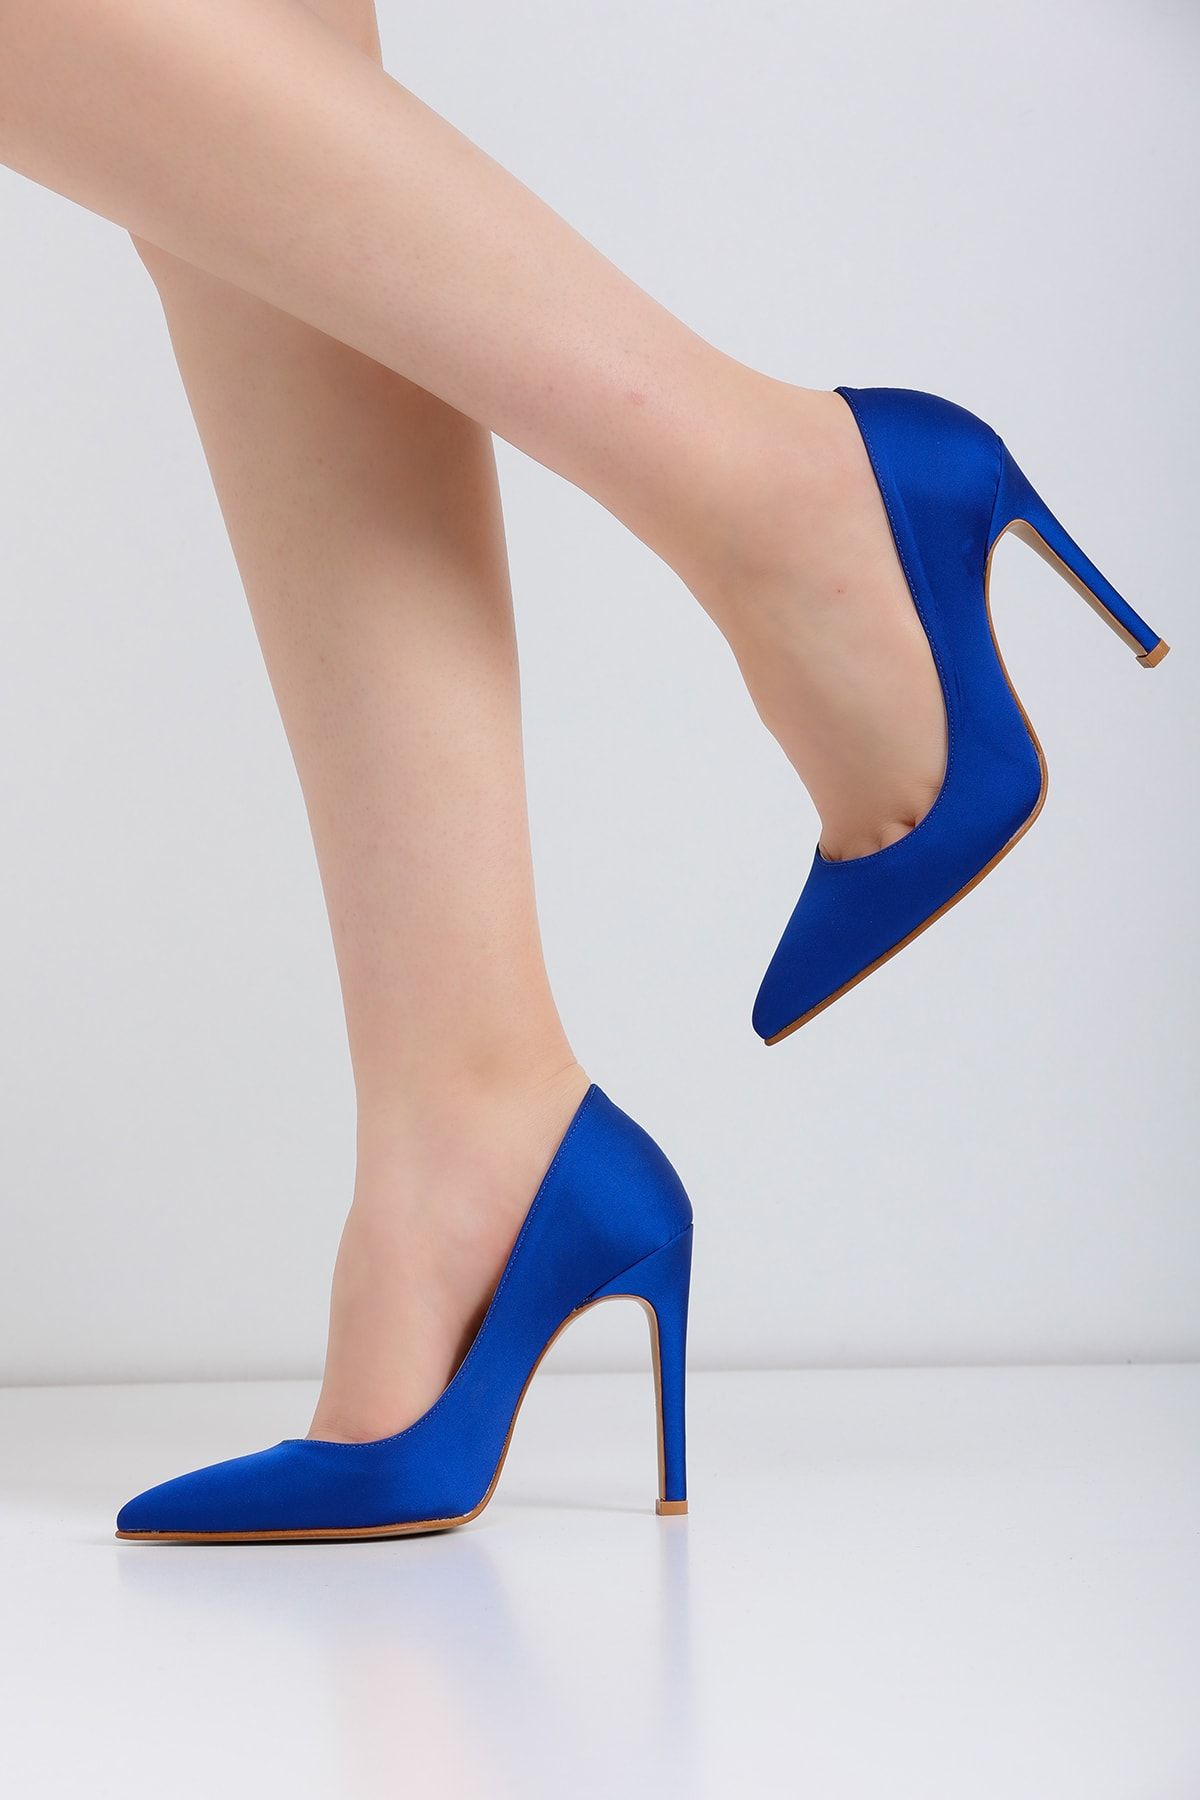 Lİmar Shoes Limar Saks Mavisi Saten Stiletto Sivri Burun Kadın Topuklu Ayakkabı